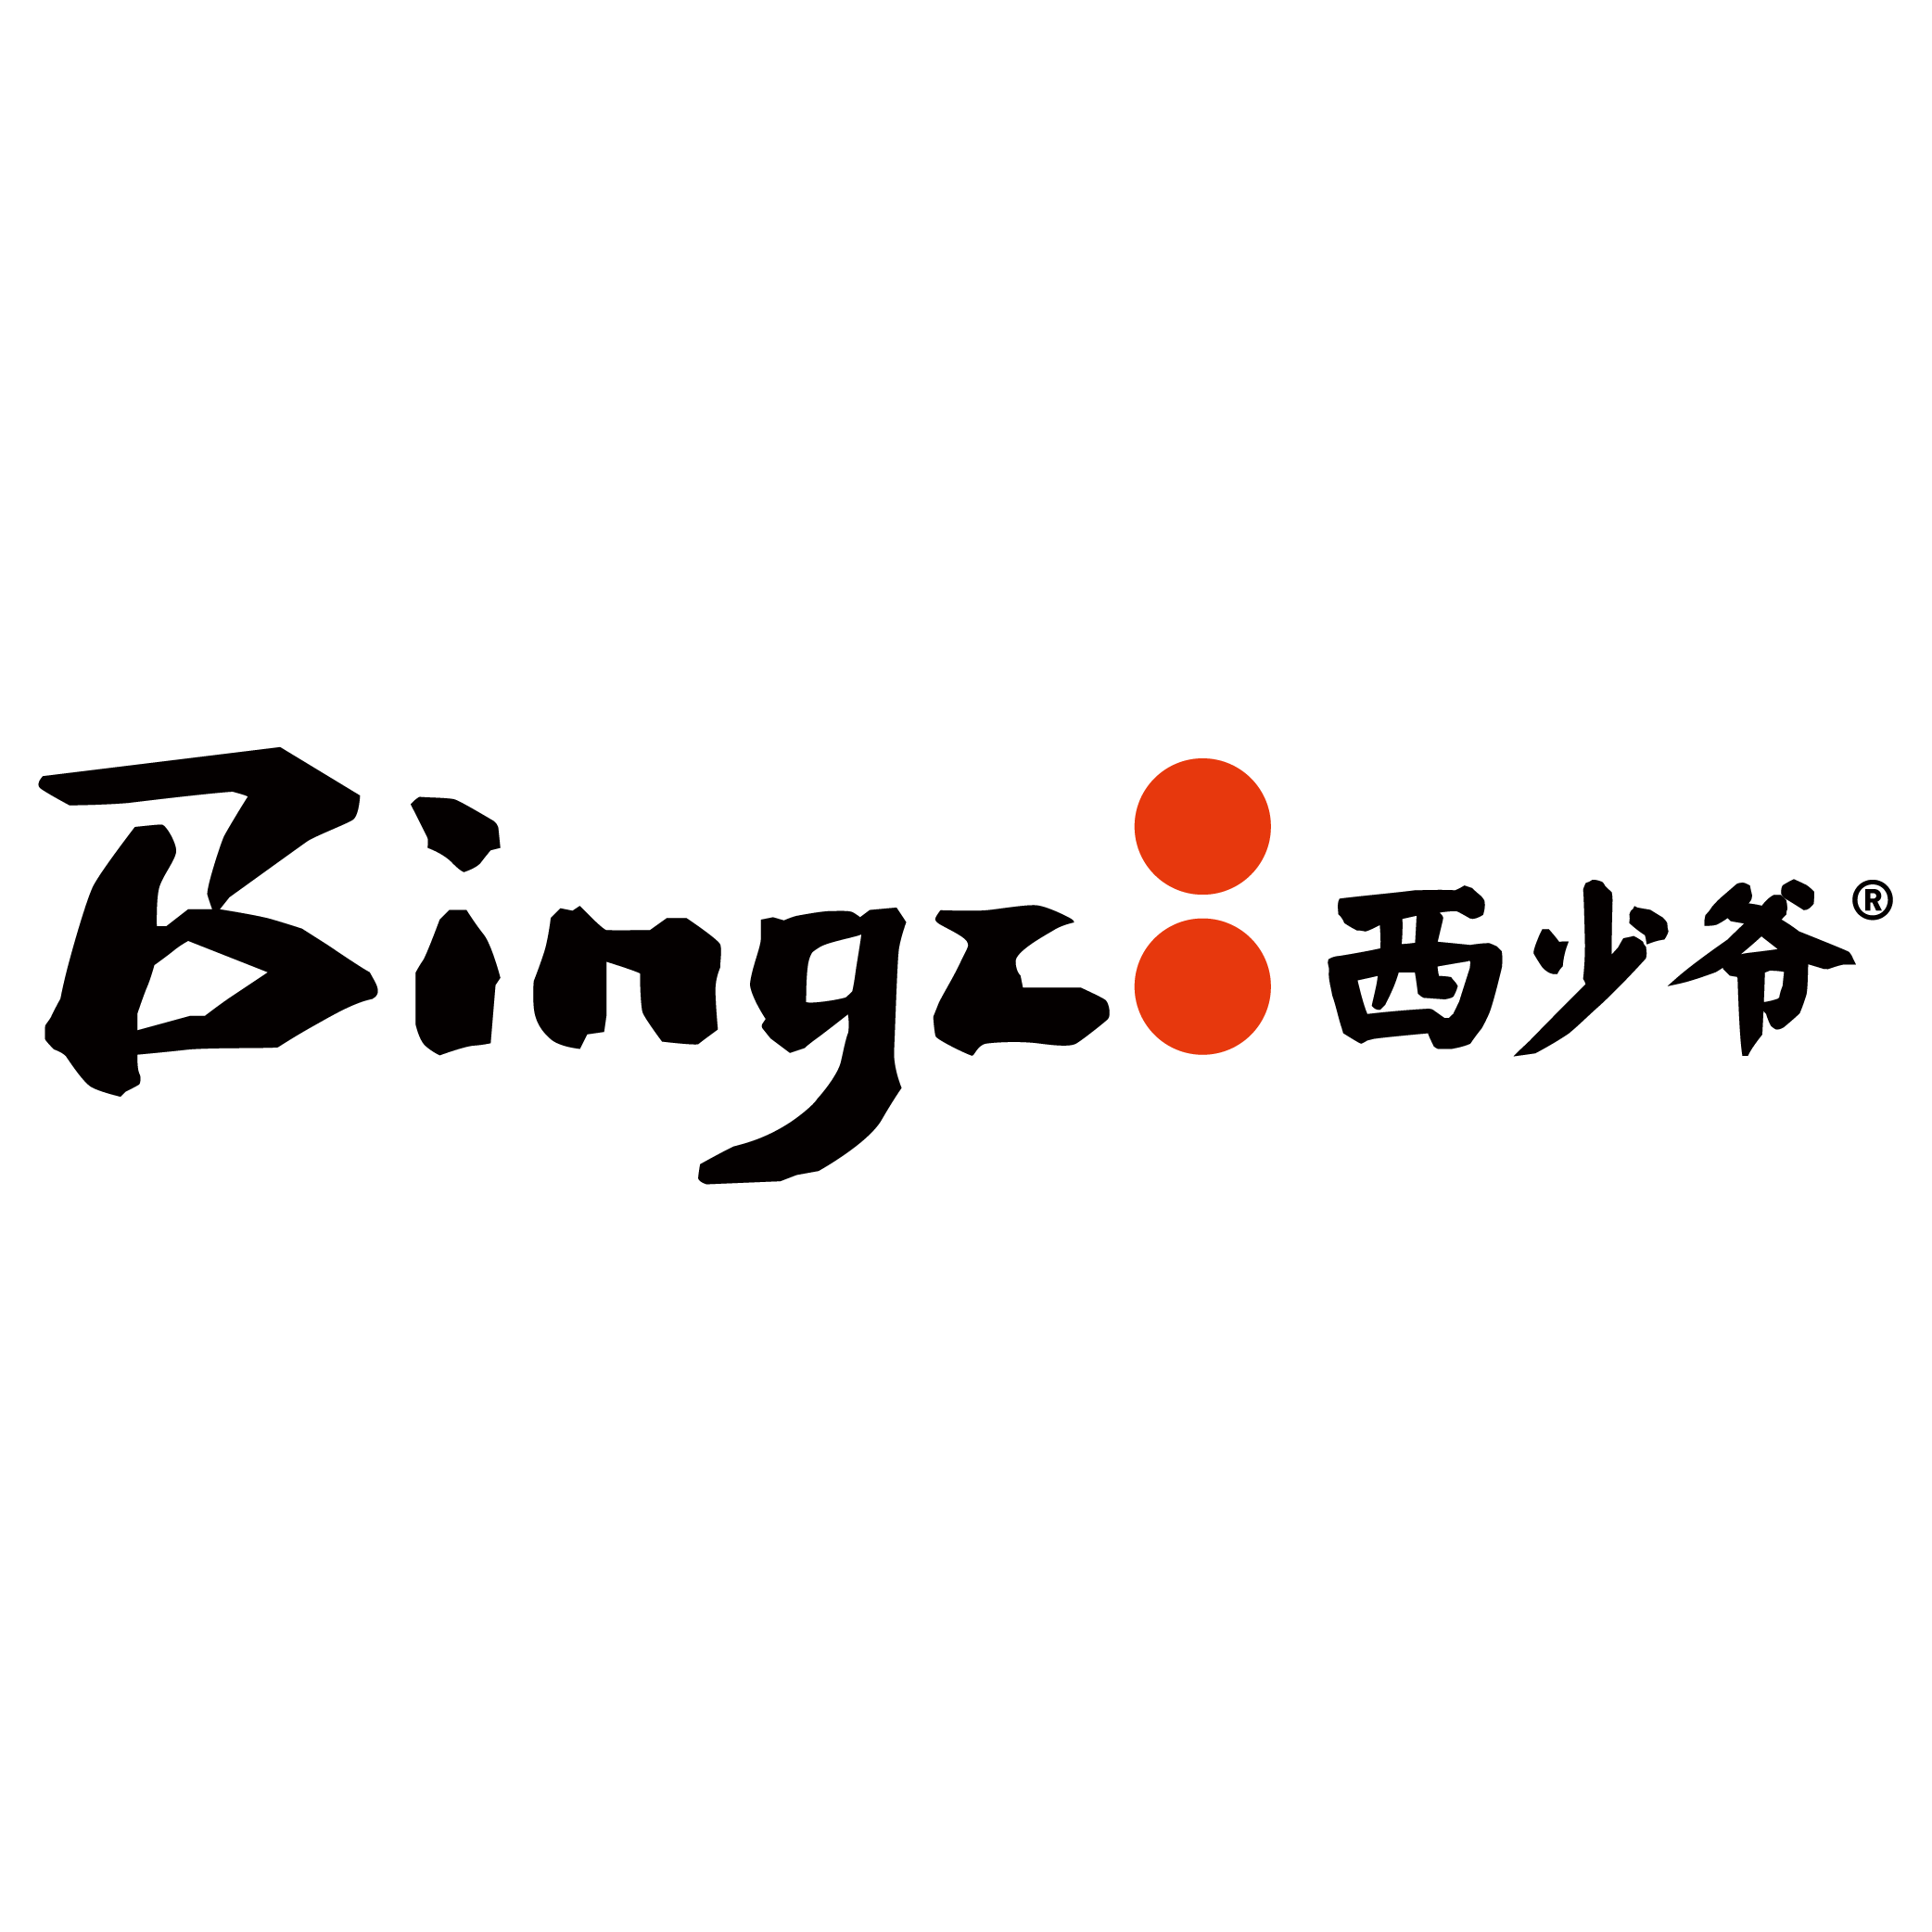 Bingz logo